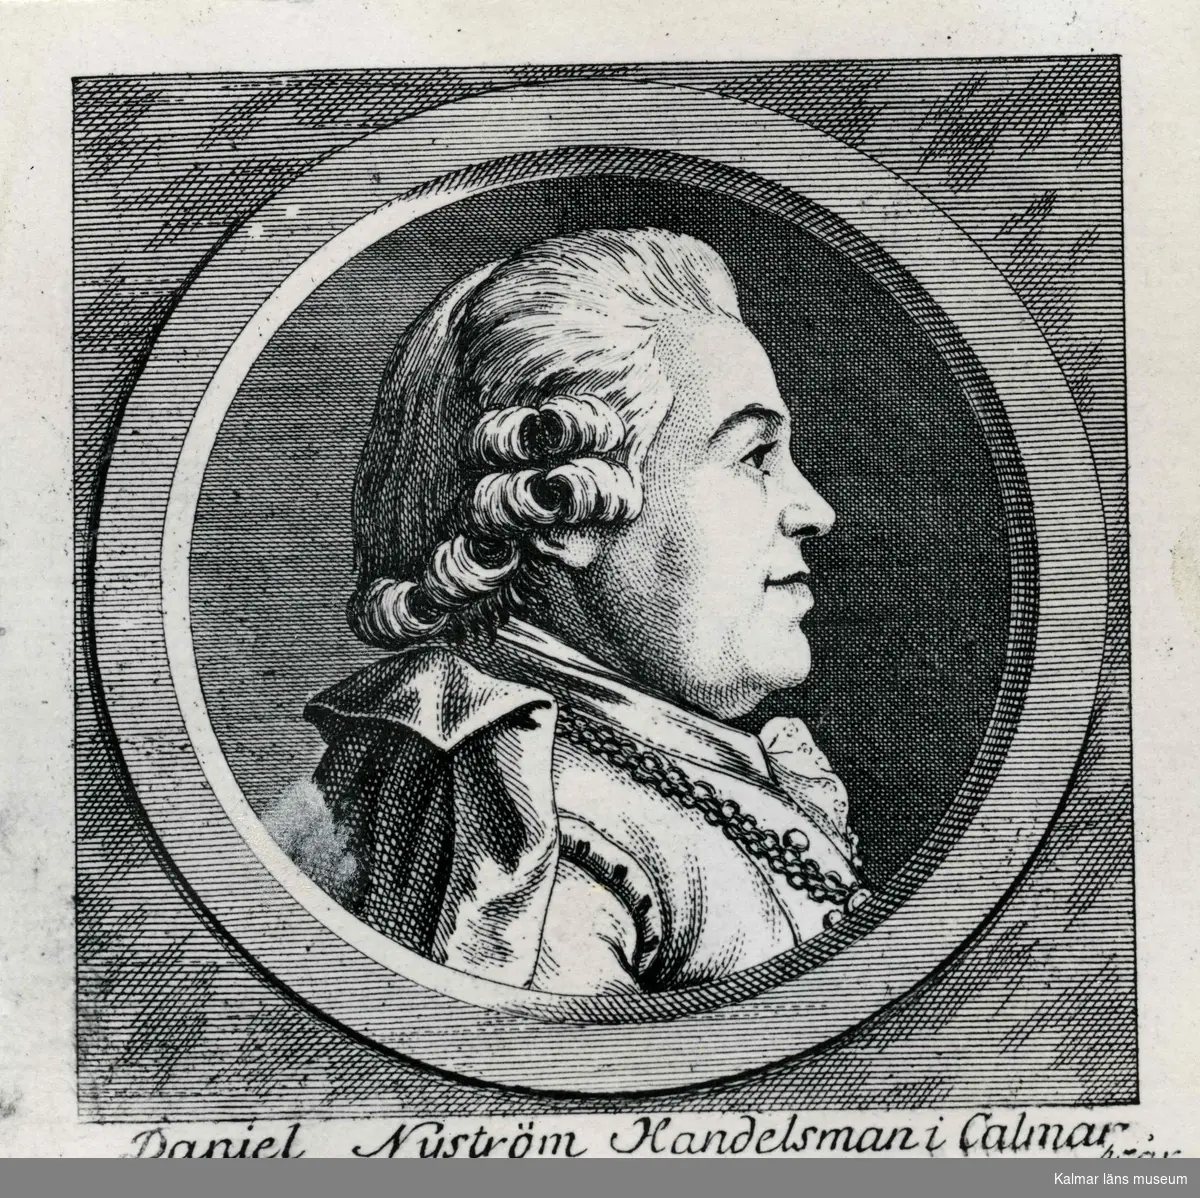 Daniel Nyström, handelsman i Kalmar. Burskap 1756, riksdagsman 1778, död 1794. Kopparstick av J. Snack. (Kungliga Biblioteket)